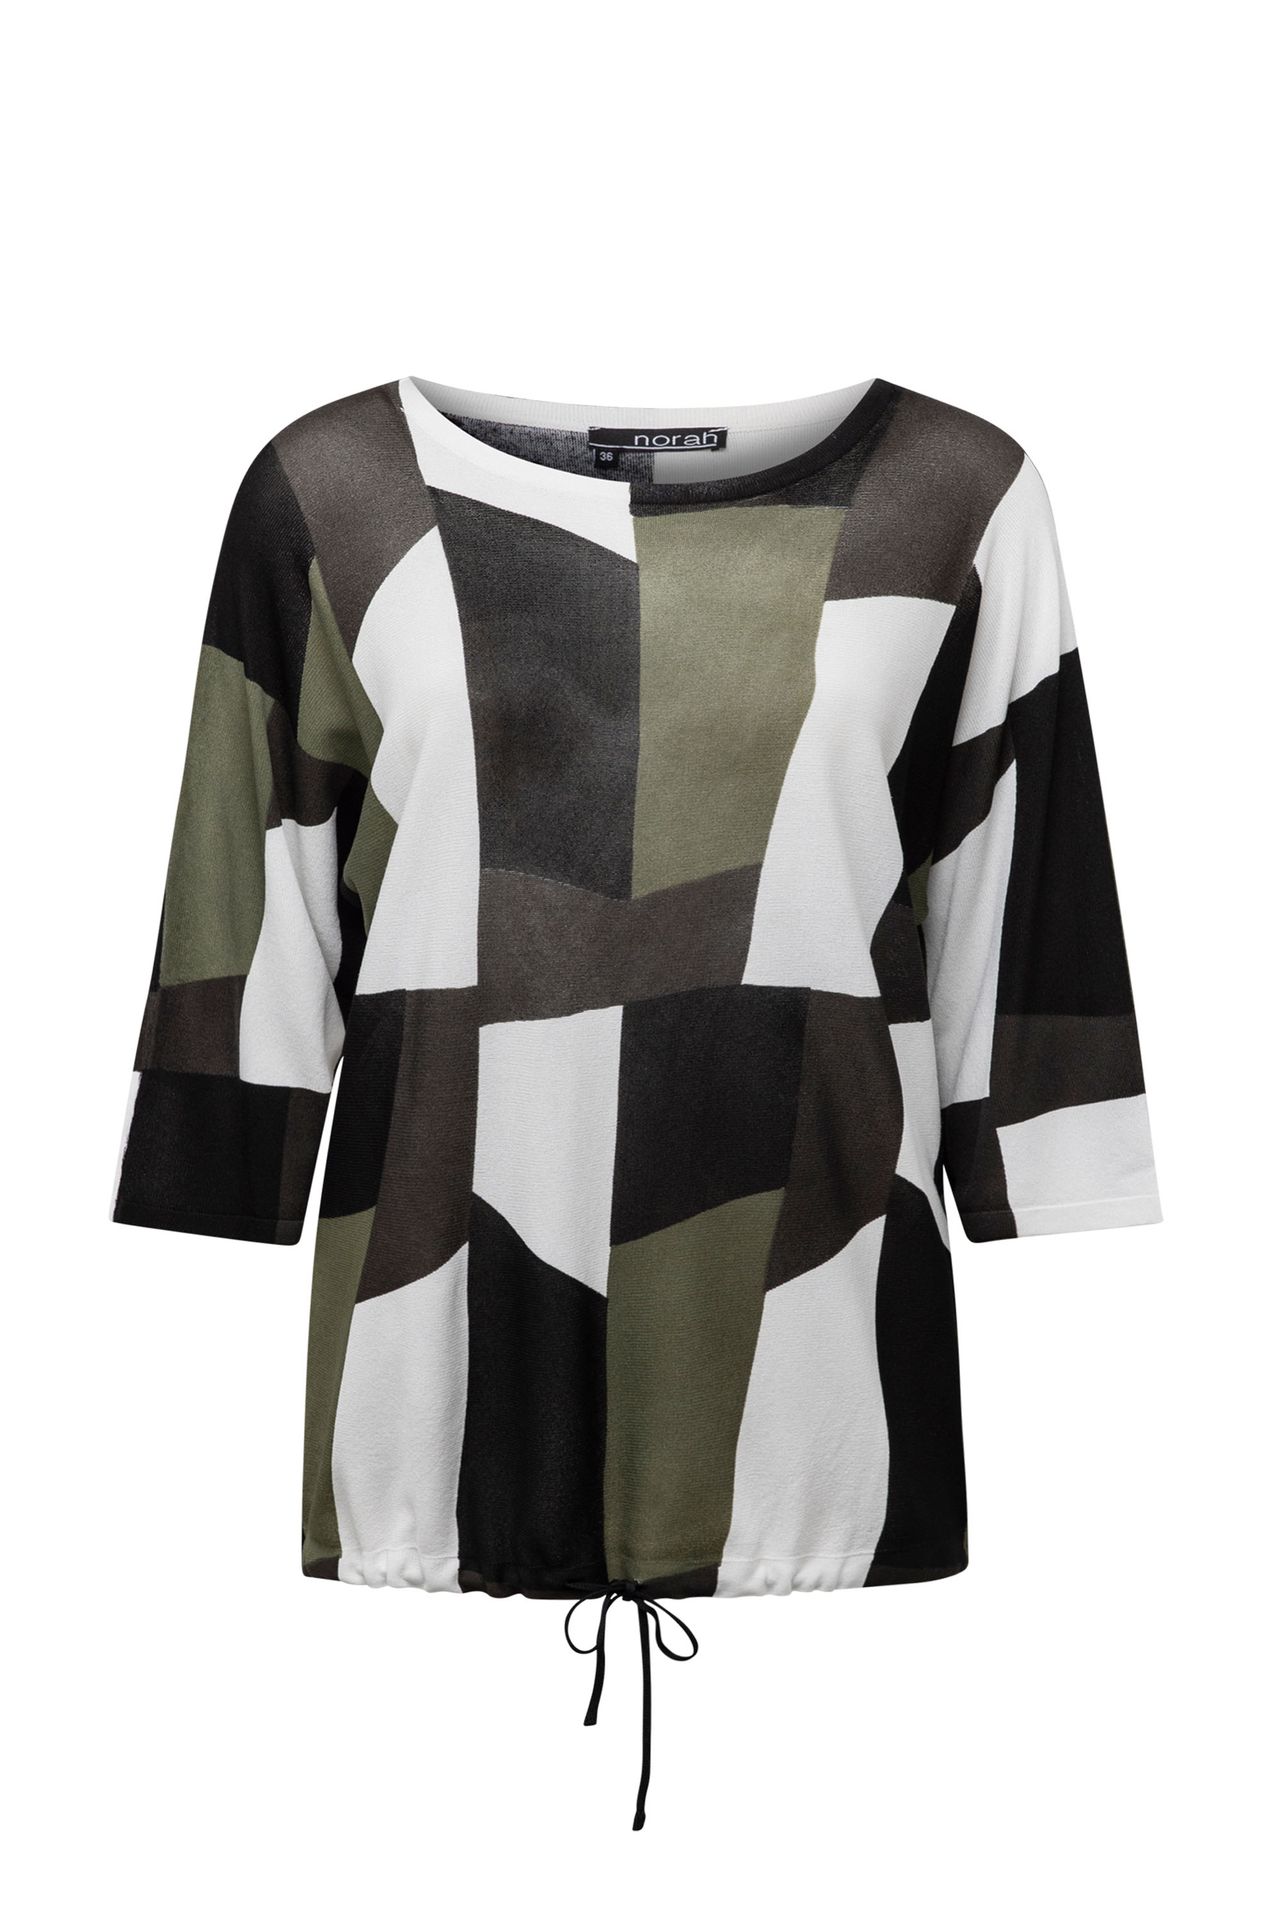 Norah Meerkleurig shirt met trekkoord black multicolor 213856-020